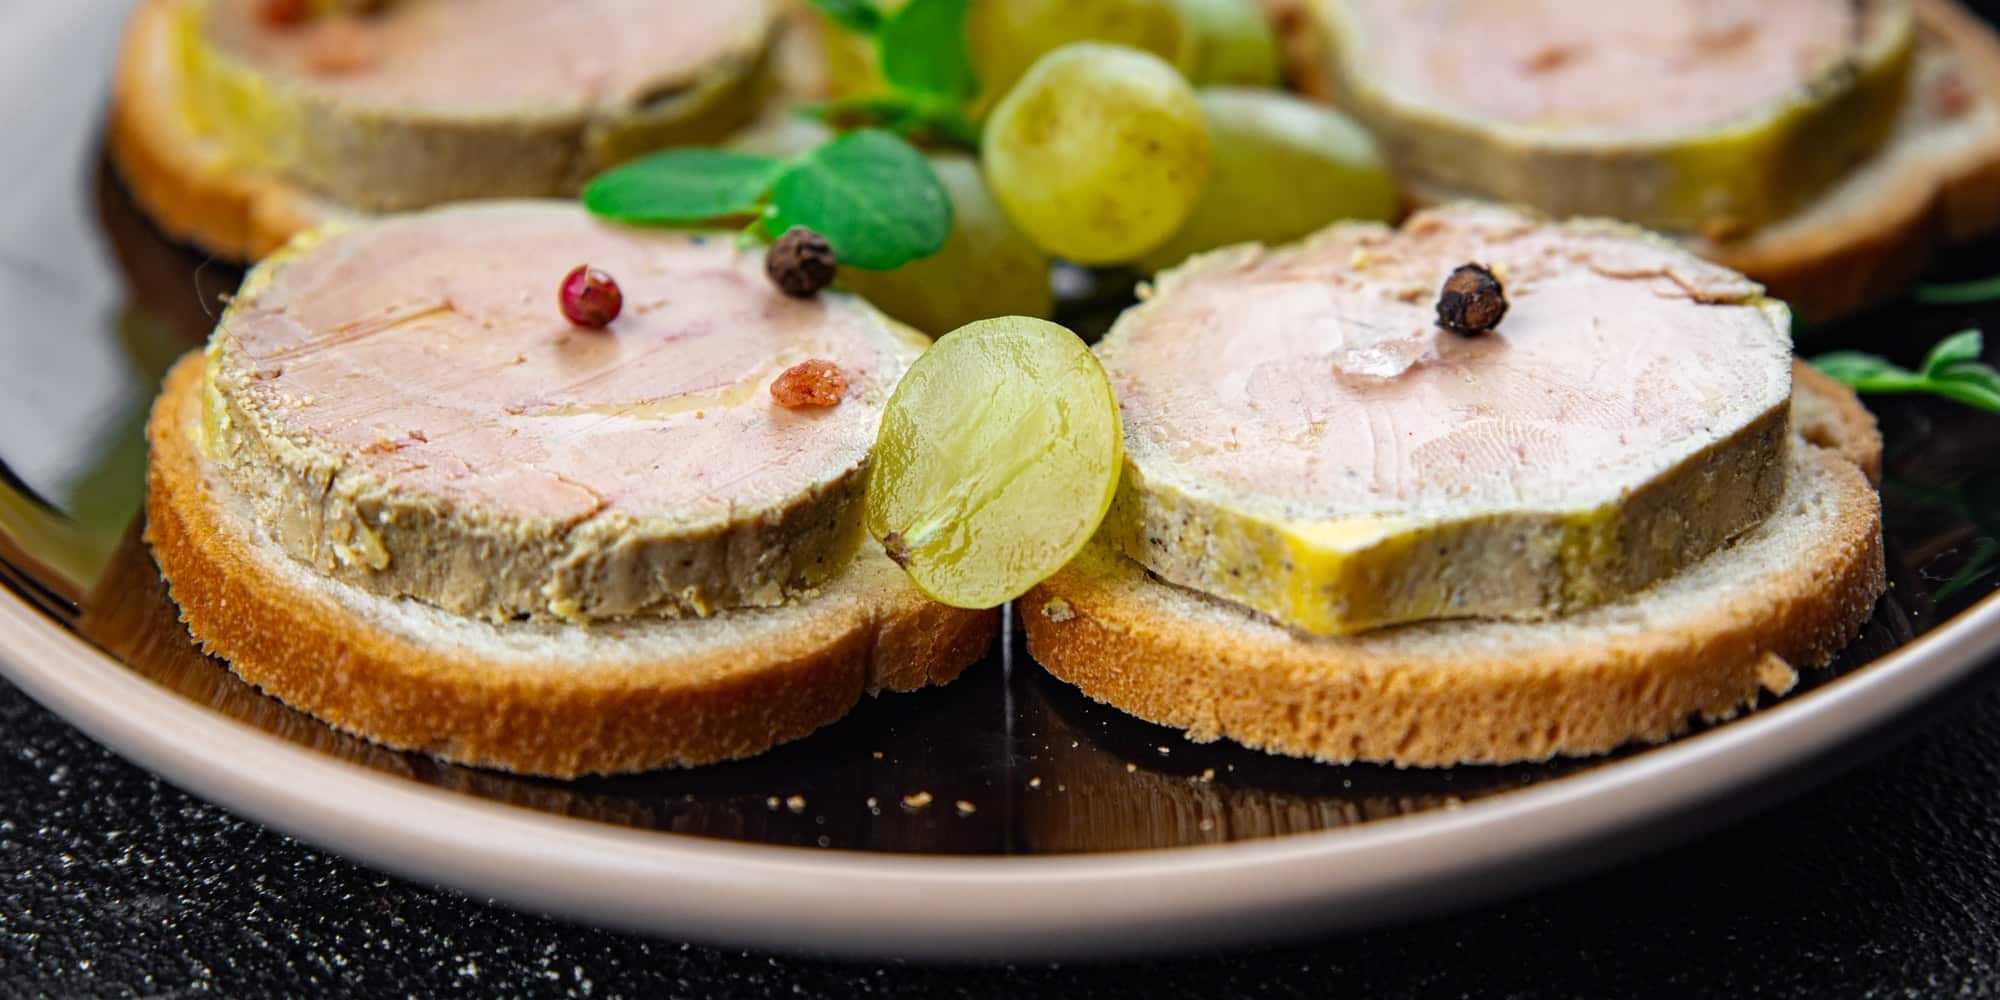 Producteur de foie gras de canard : quelles spécialités gourmandes proposent-ils ?